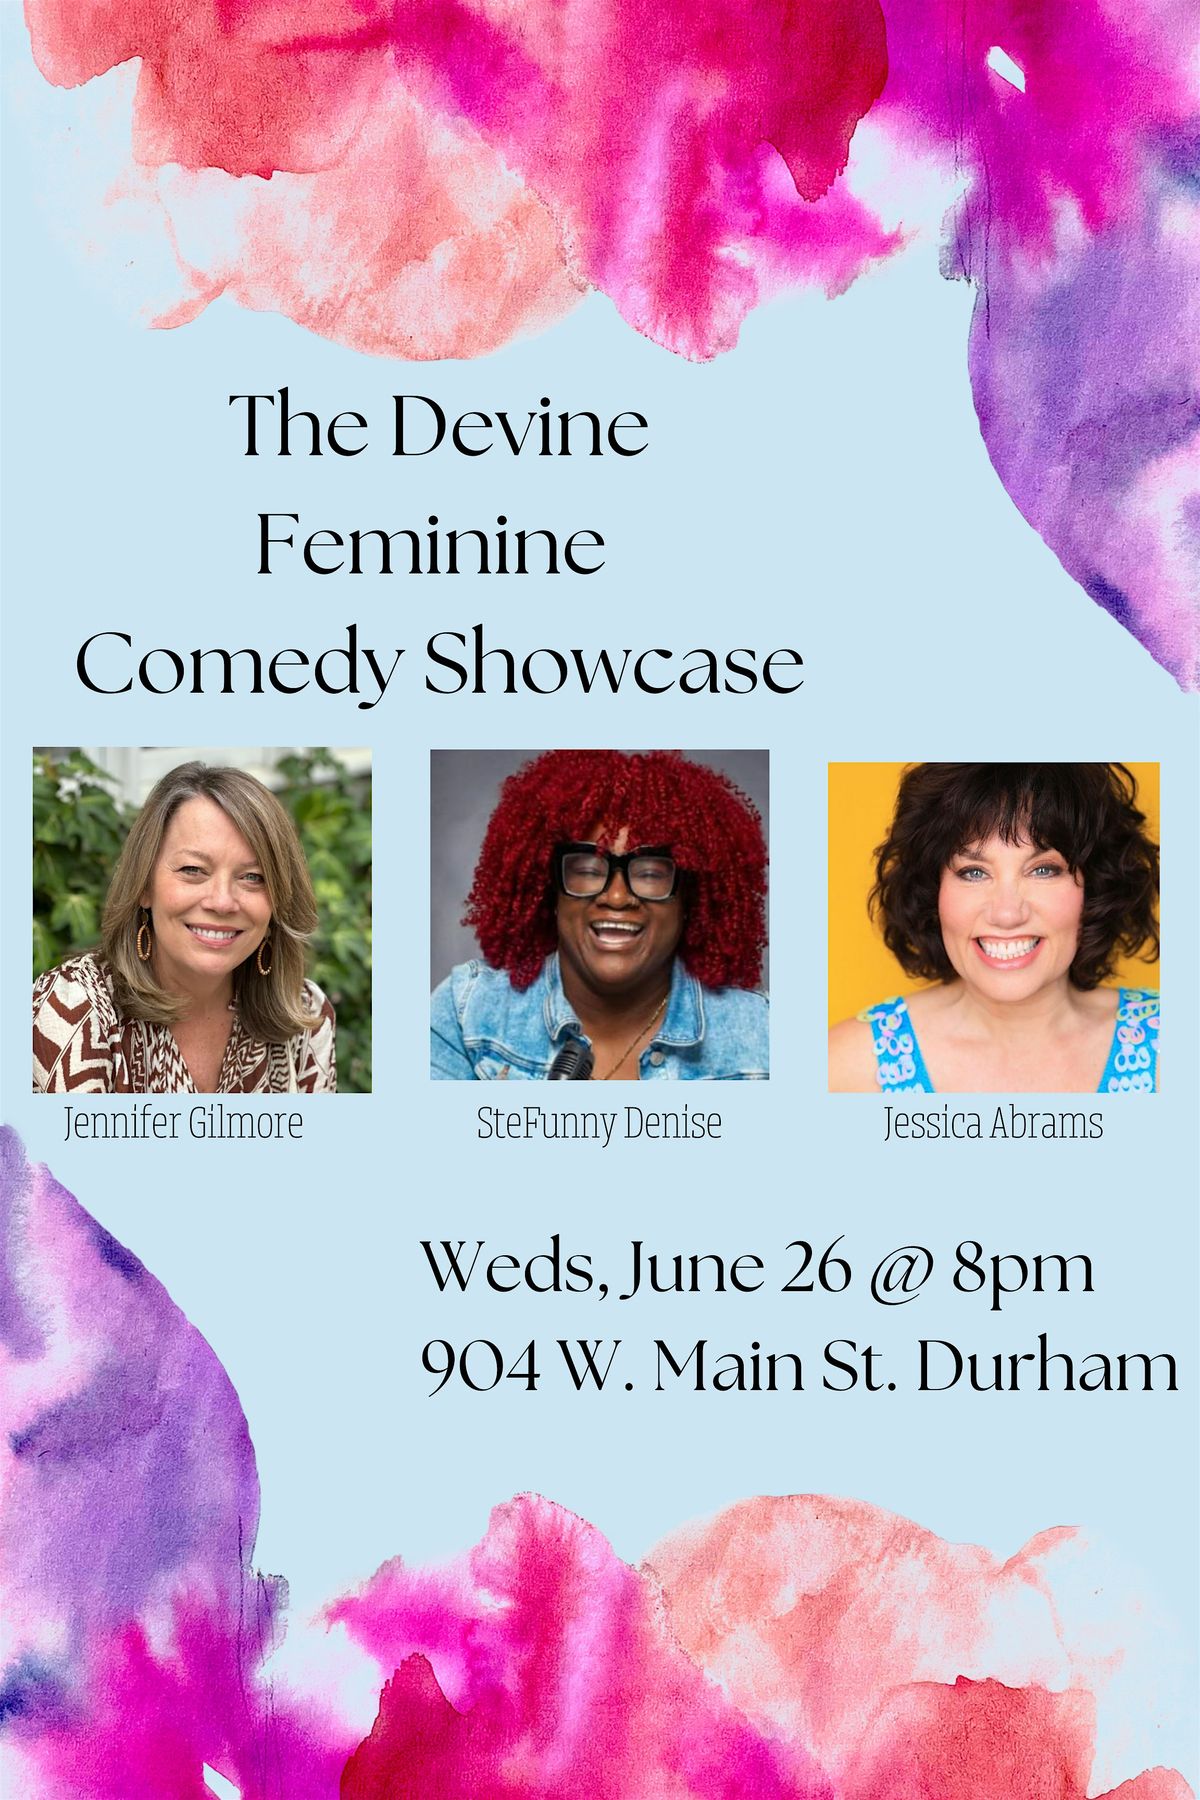 The Devine Feminine Comedy Showcase